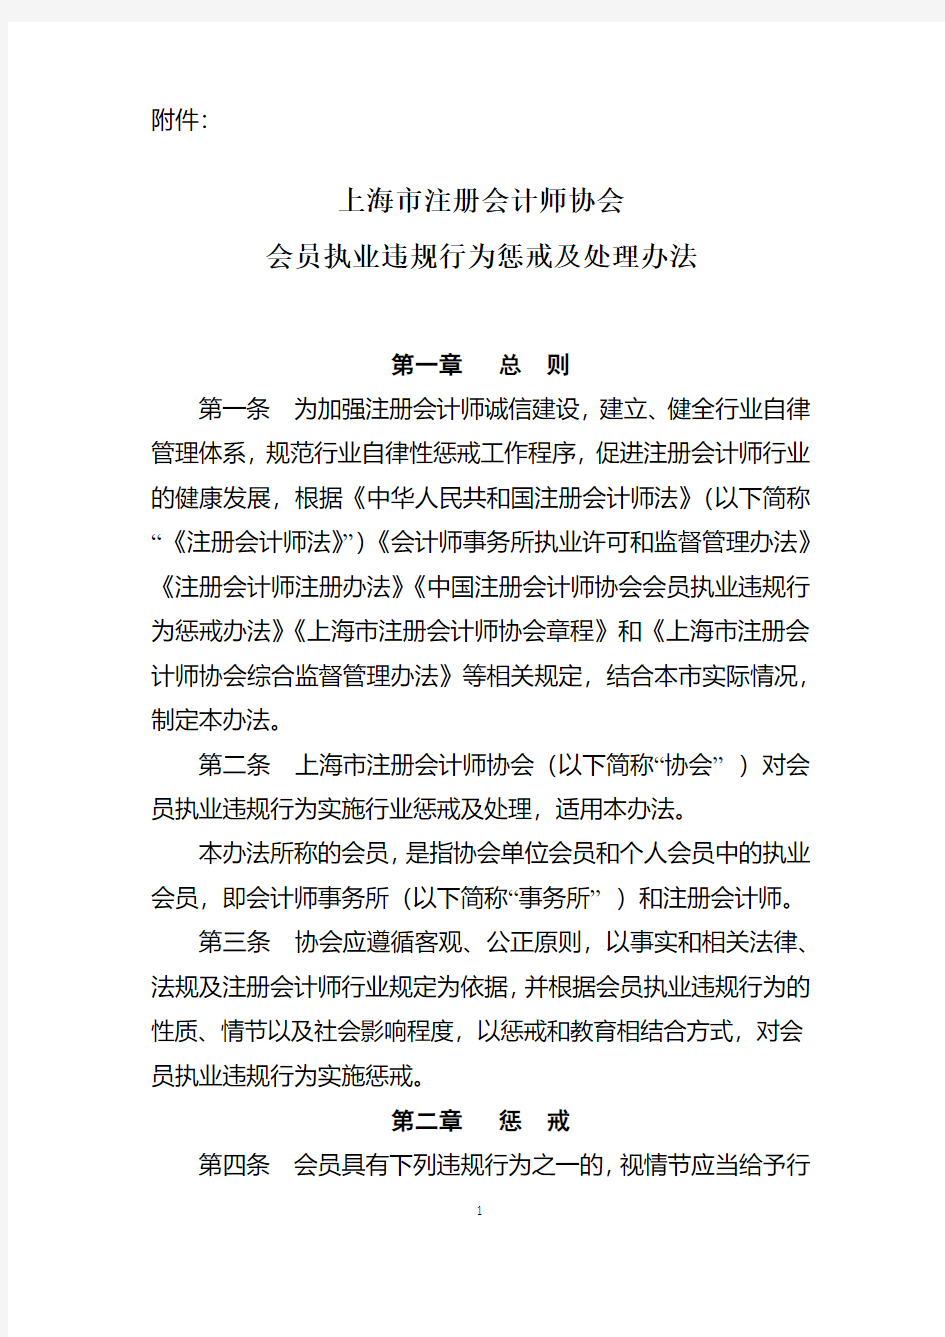 上海市注册会计师协会会员执业违规行为惩戒及处理办法